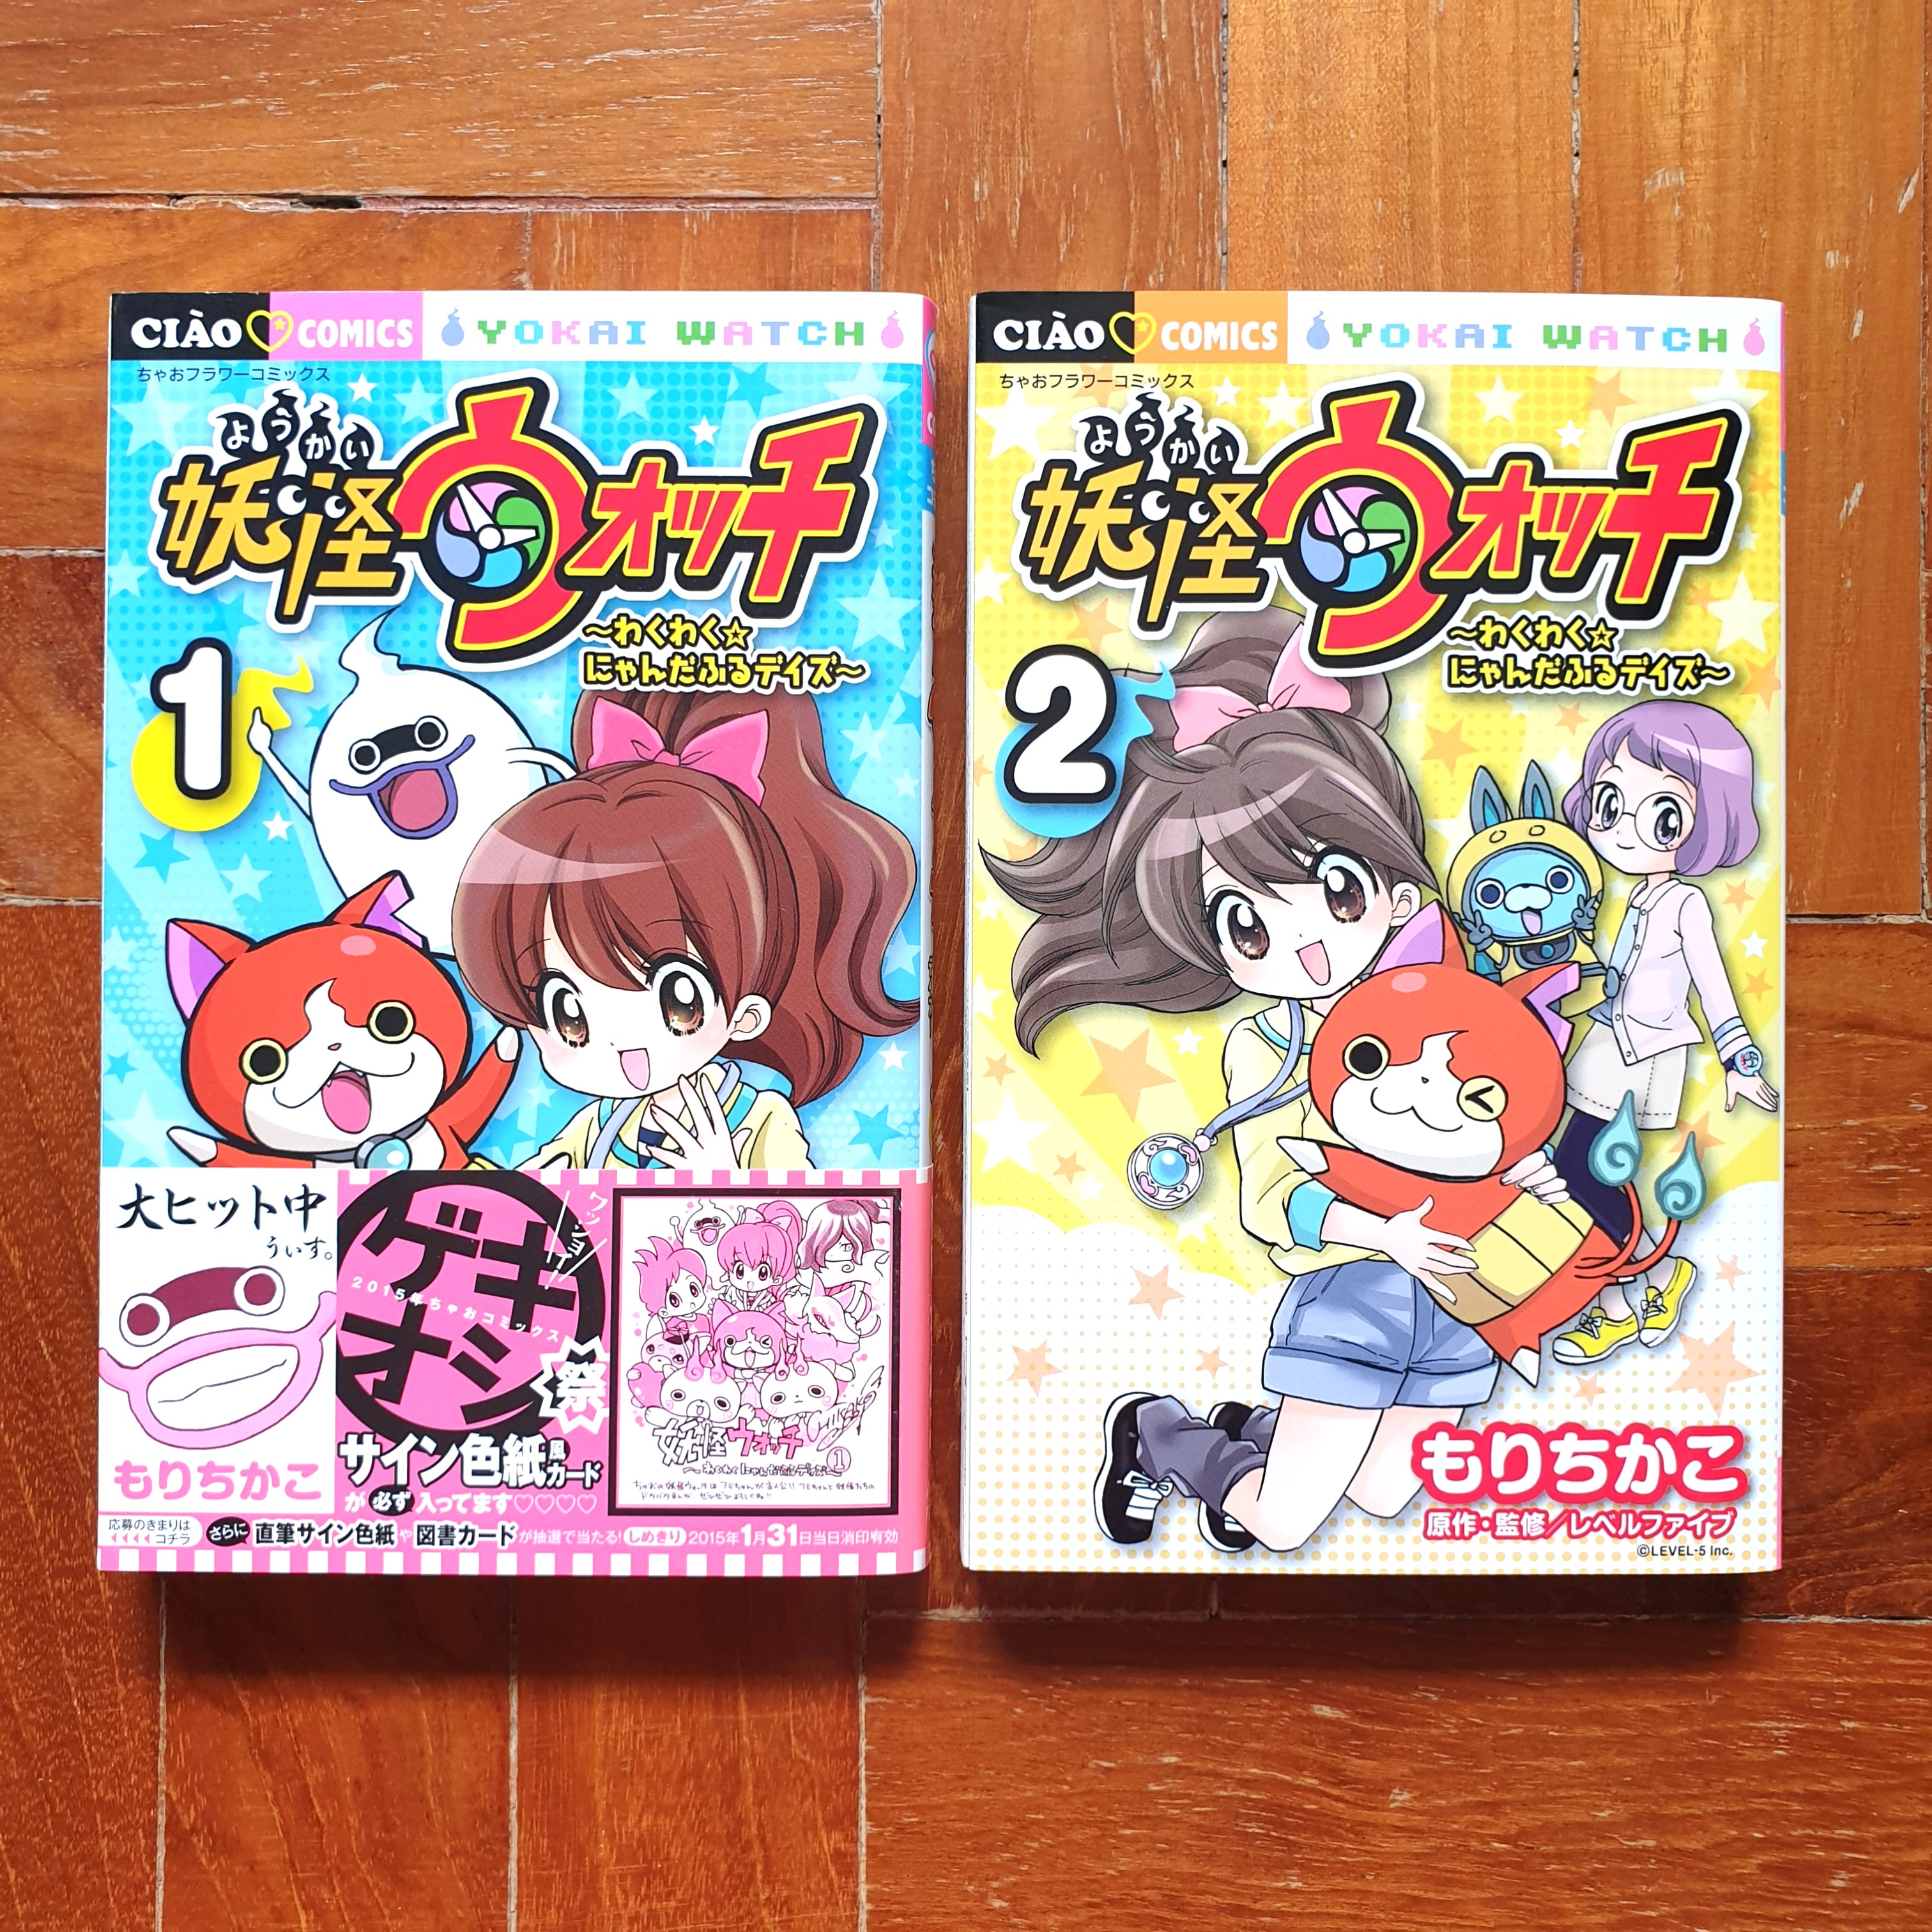 妖怪ウォッチ わかわく にゃんだふるデイズ 1 2 Japanese Manga By もりちかこ Books Stationery Comics Manga On Carousell